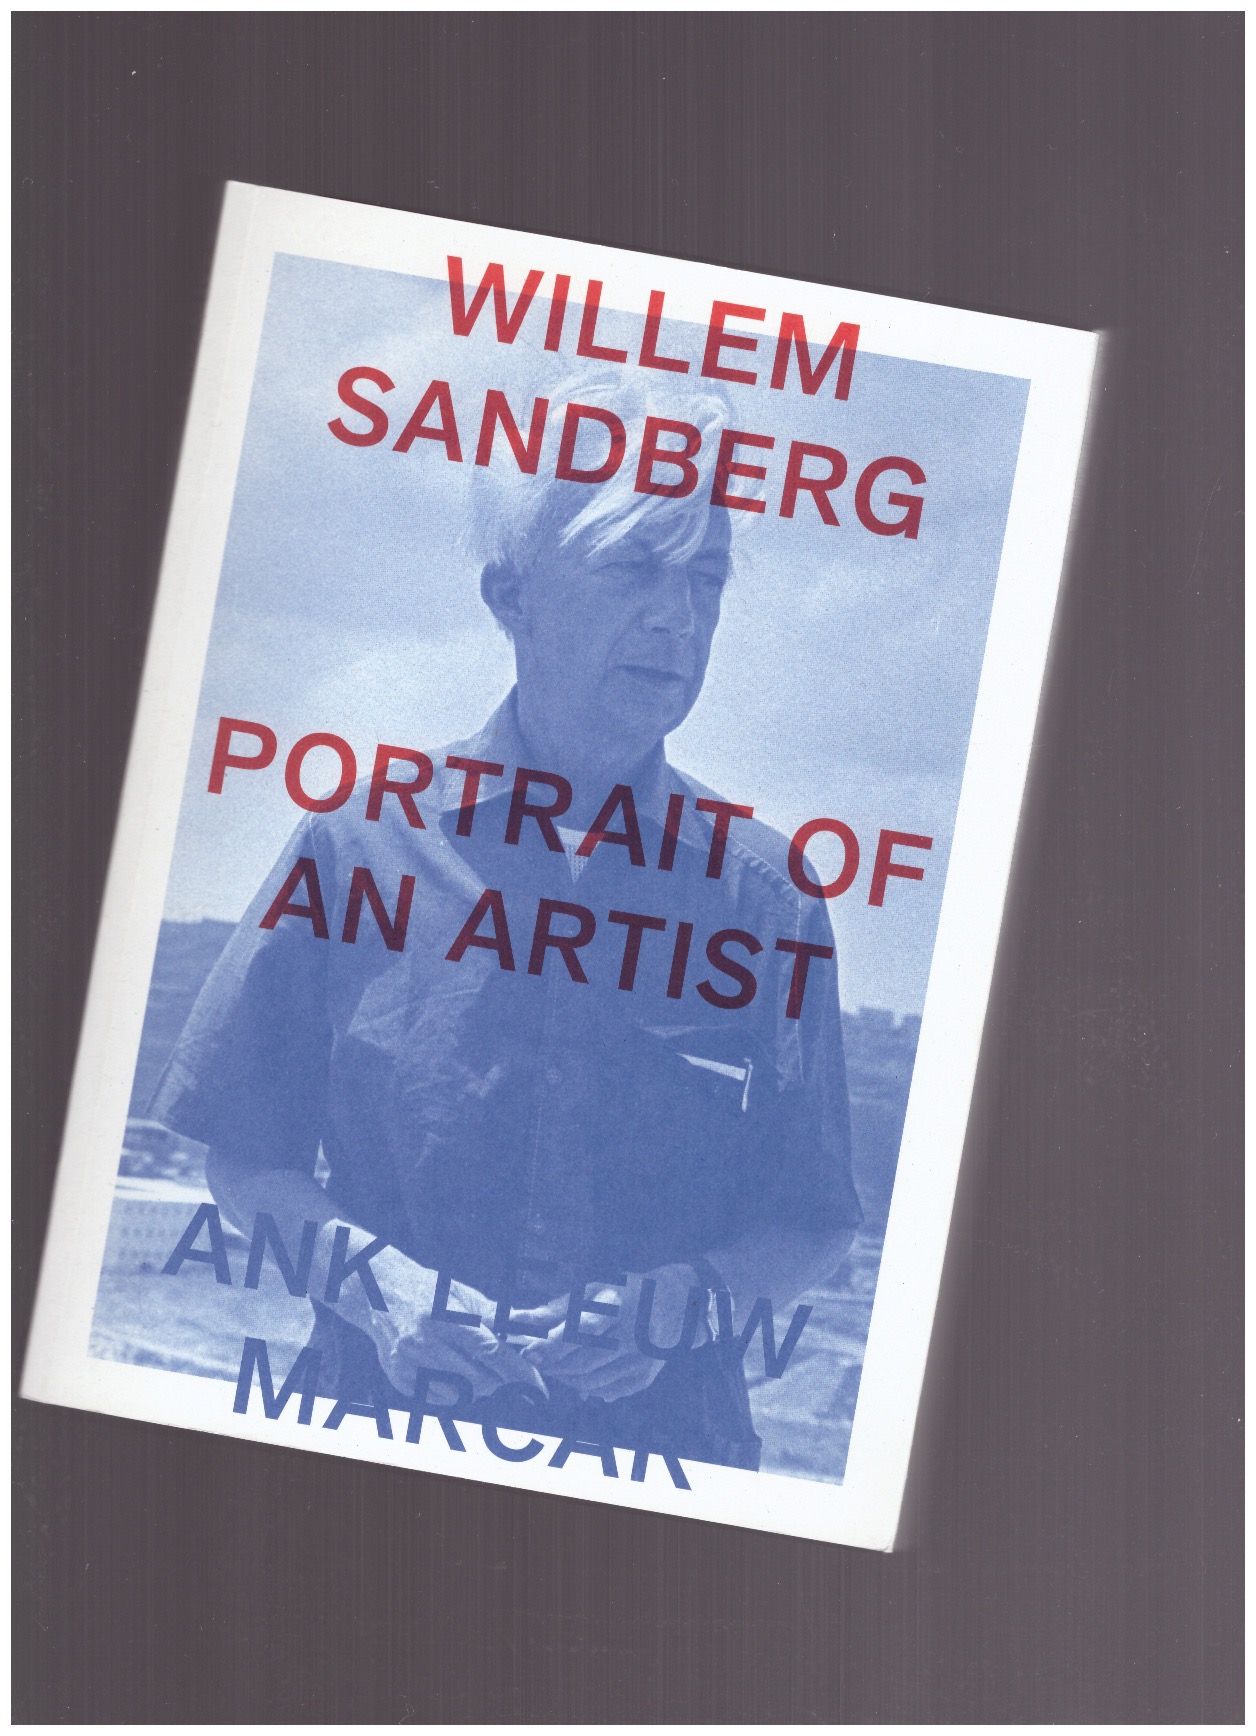 LEEUW MARCAR, Ank - Willem Sandberg: Portrait of an Artist